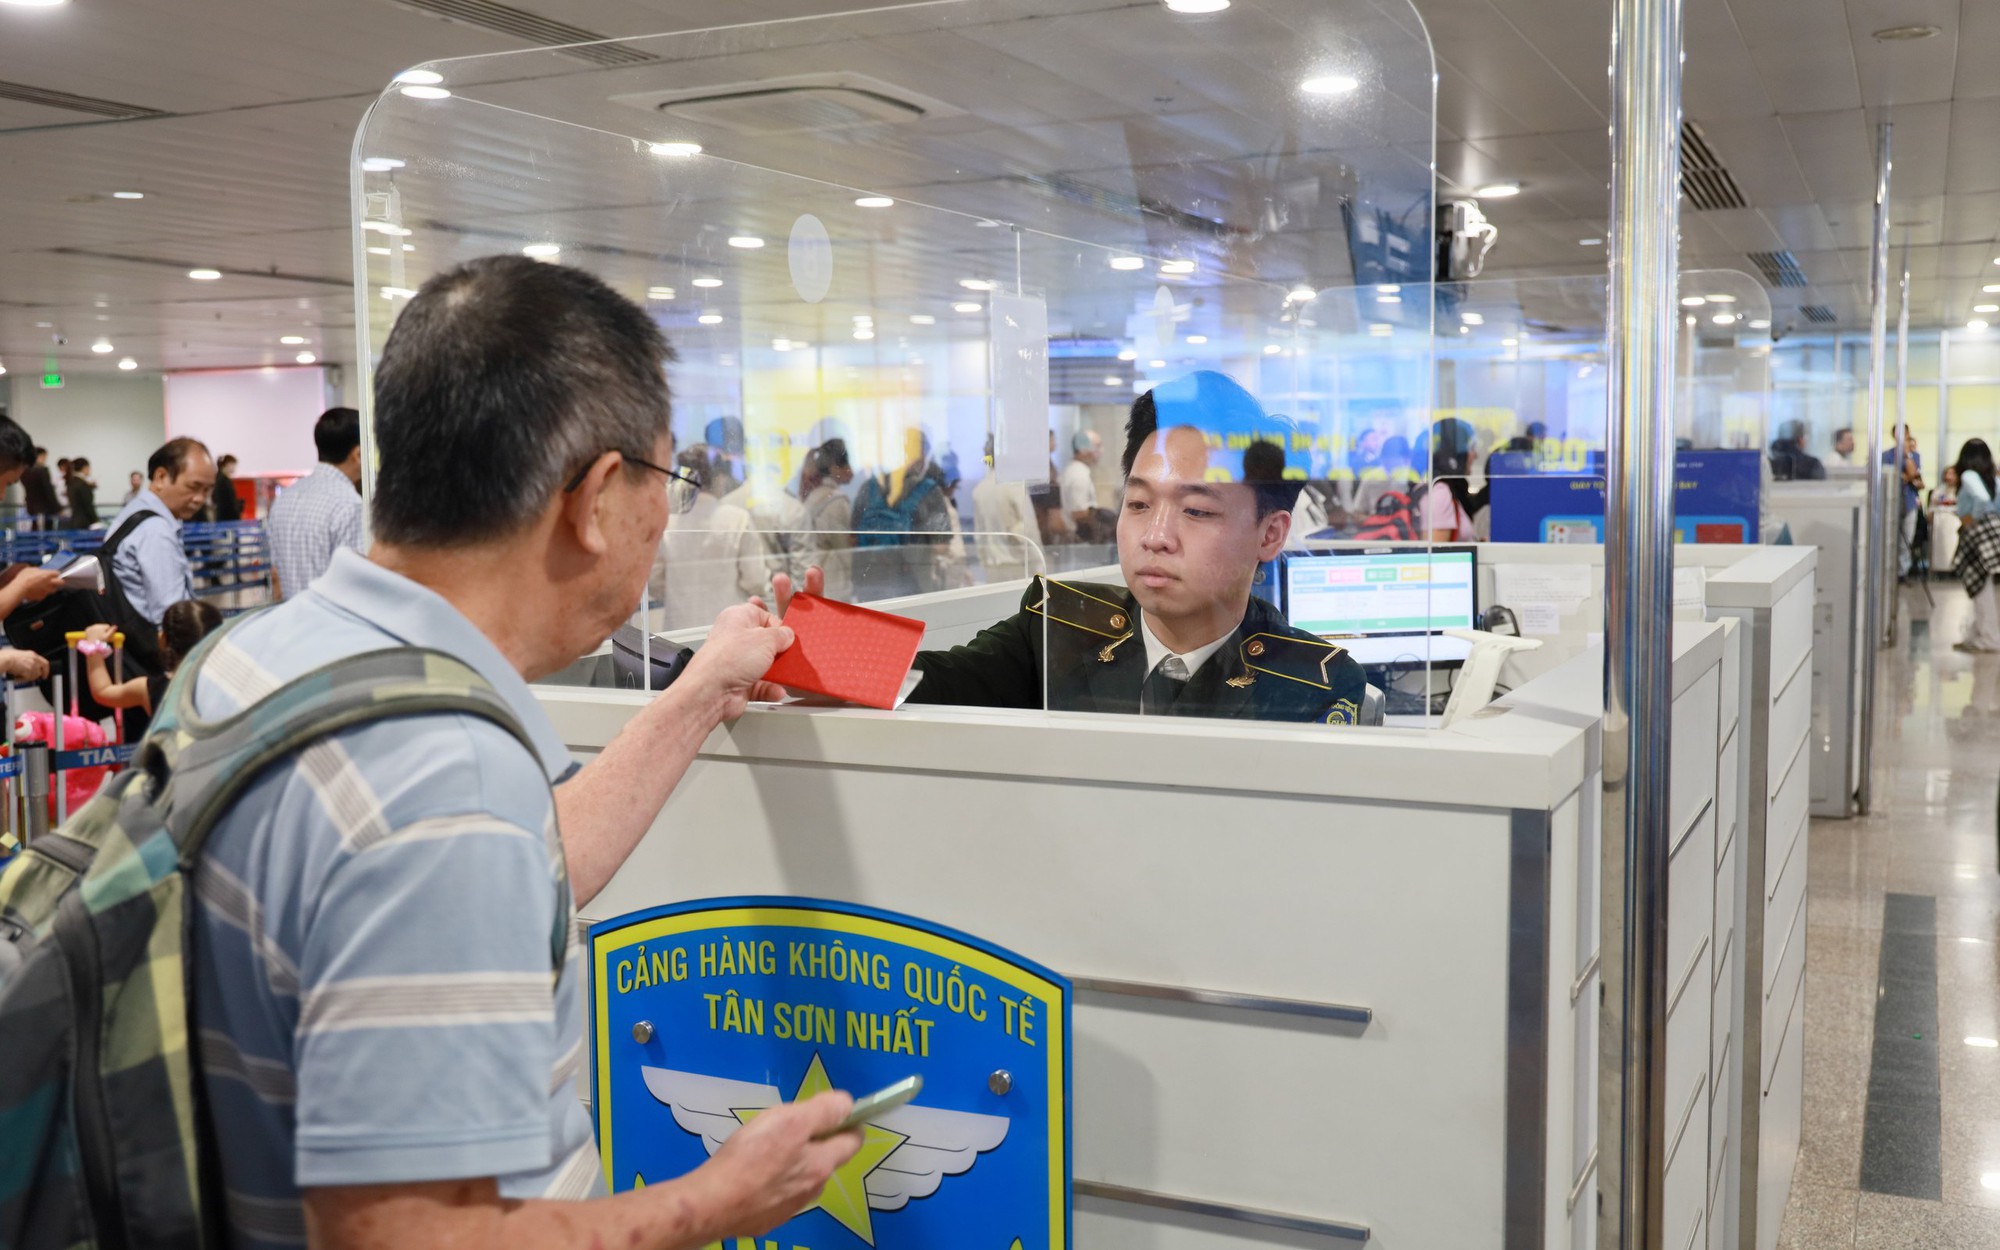 Tăng chuyến phòng "cháy" vé máy bay, cảng Hàng không quốc tế Tân Sơn Nhất dự báo lượng khách không như kỳ vọng